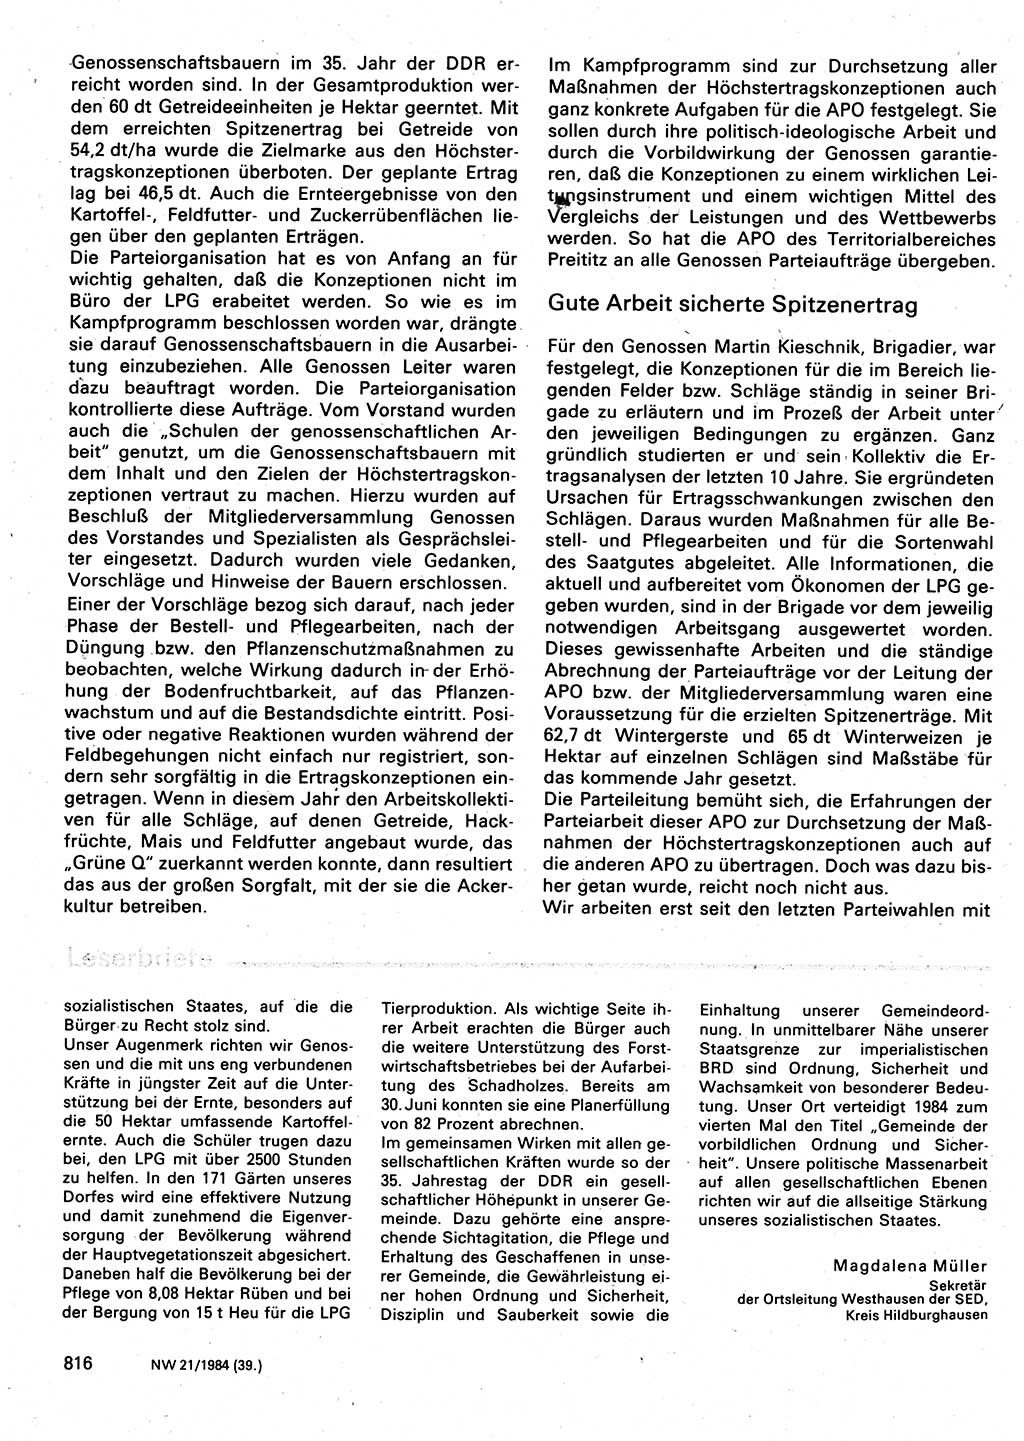 Neuer Weg (NW), Organ des Zentralkomitees (ZK) der SED (Sozialistische Einheitspartei Deutschlands) für Fragen des Parteilebens, 39. Jahrgang [Deutsche Demokratische Republik (DDR)] 1984, Seite 816 (NW ZK SED DDR 1984, S. 816)